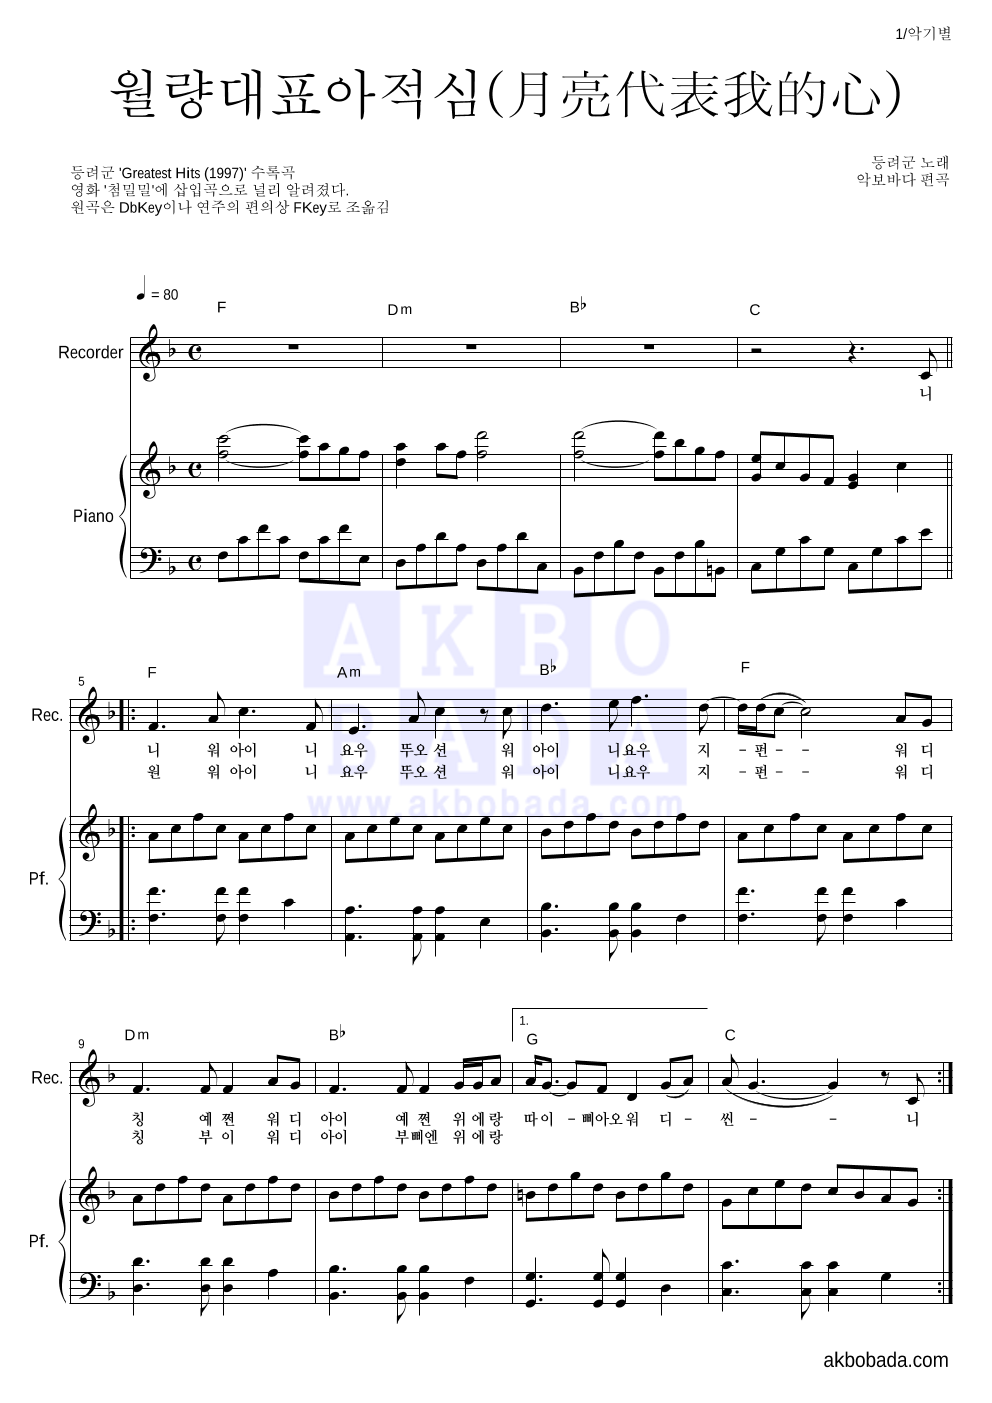 등려군(鄧麗筠) - 월량대표아적심 (月亮代表我的心) 리코더&피아노 악보 